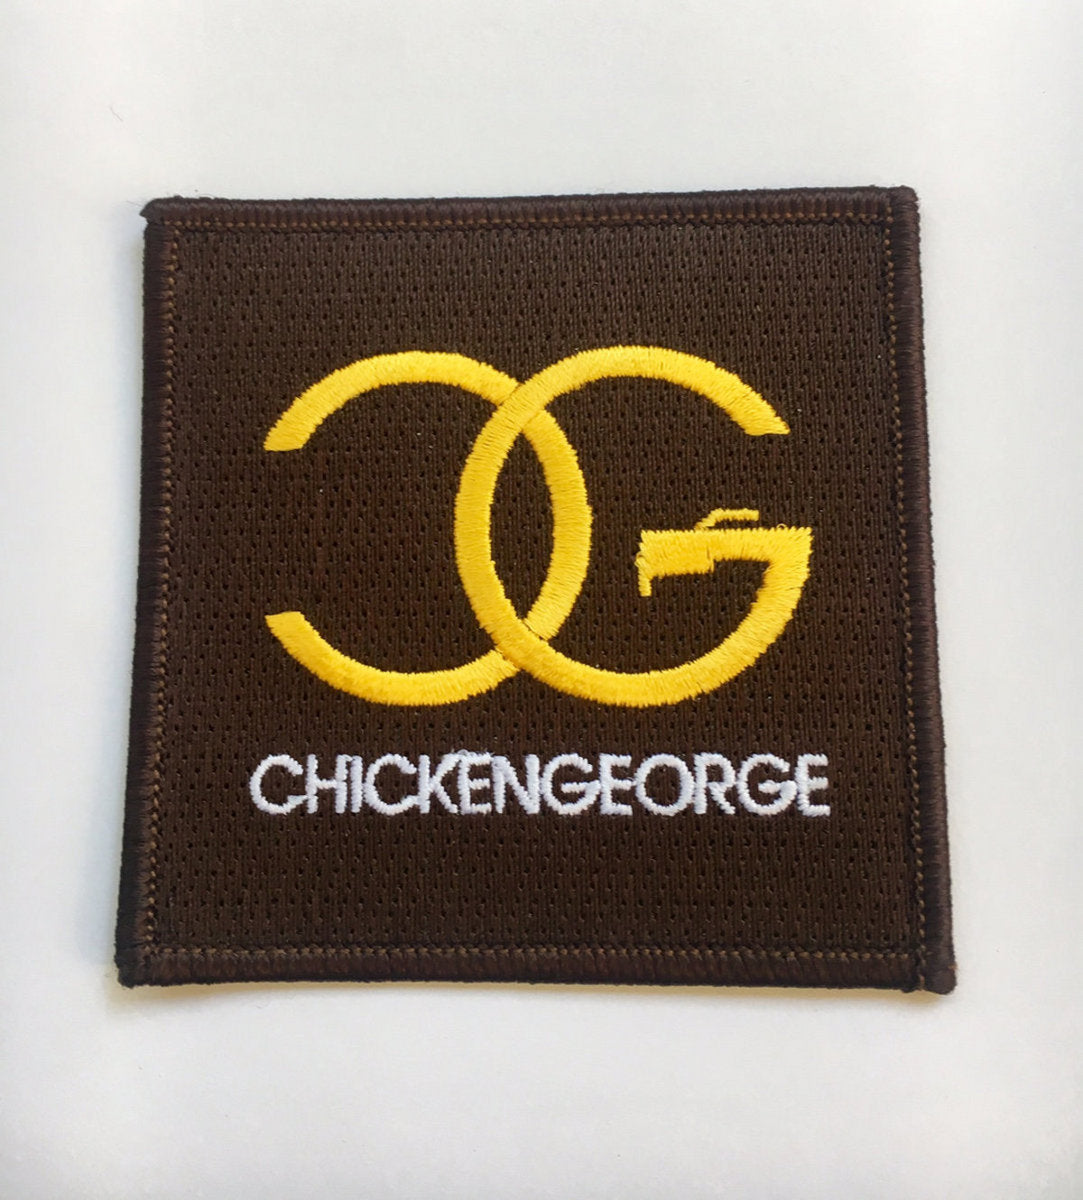 DJ Chicken George Patch